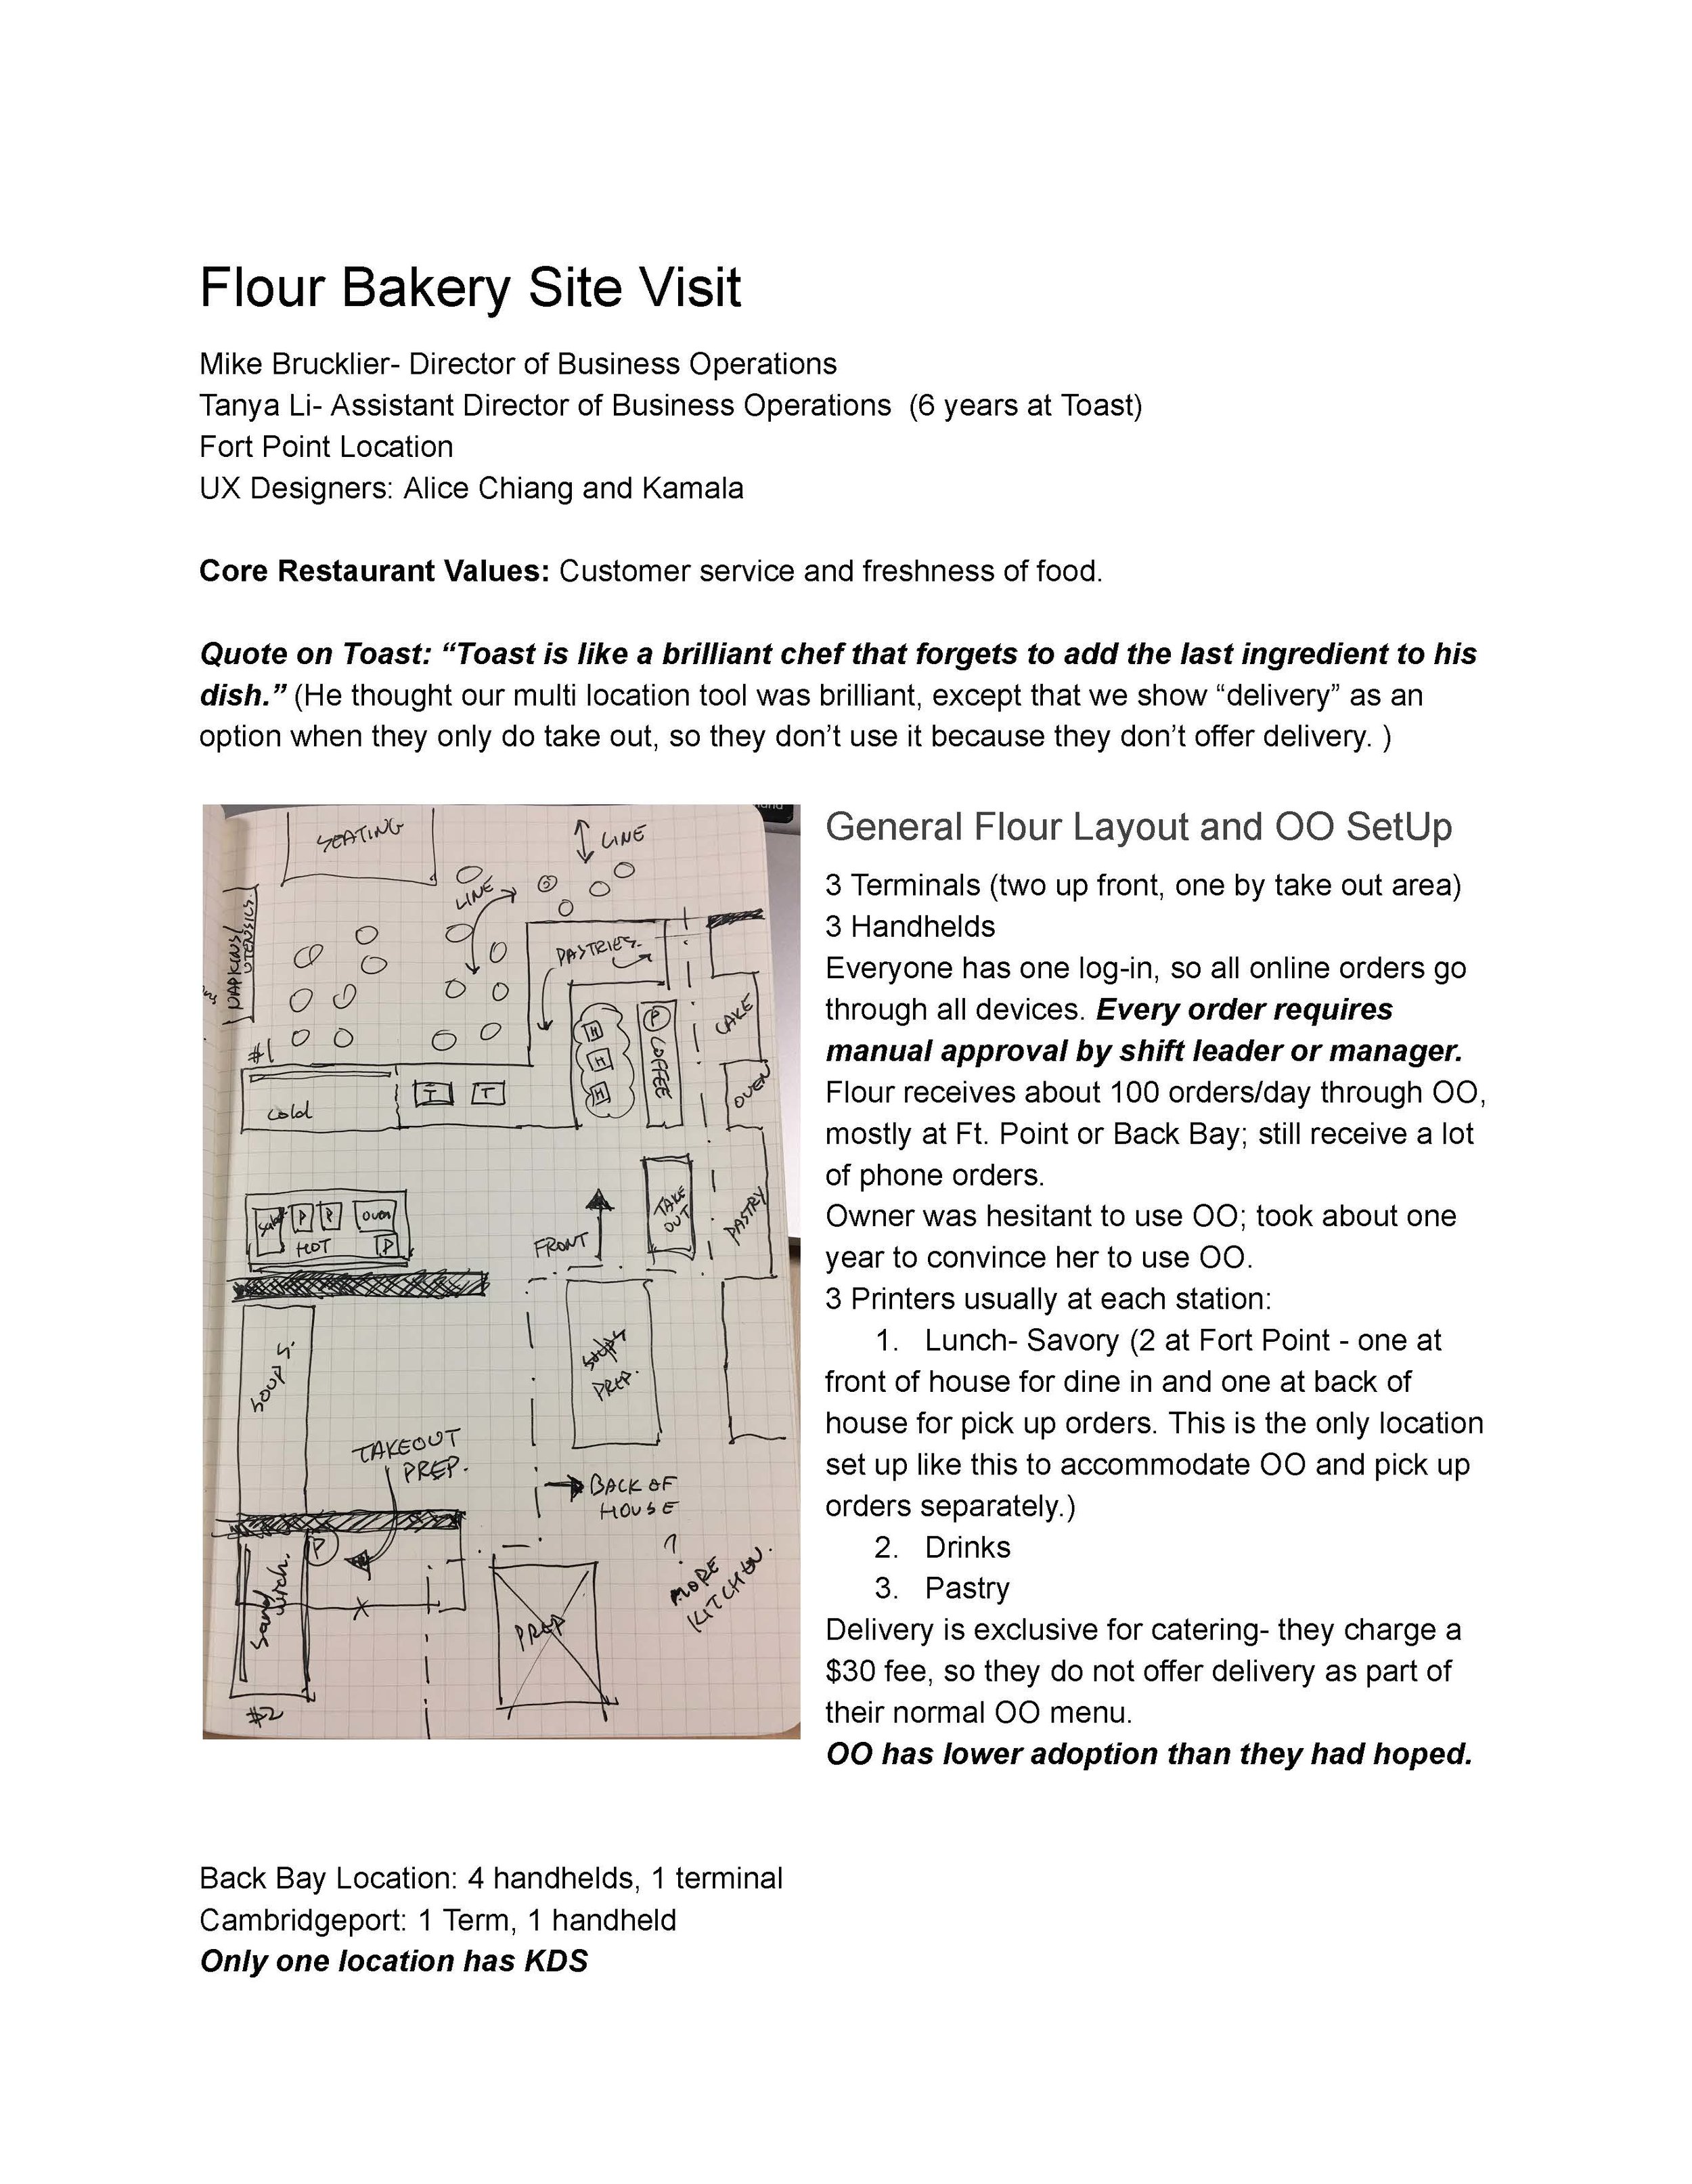 Flour Bakery Site Visit 01252017 - Google Docs_Page_01.jpg